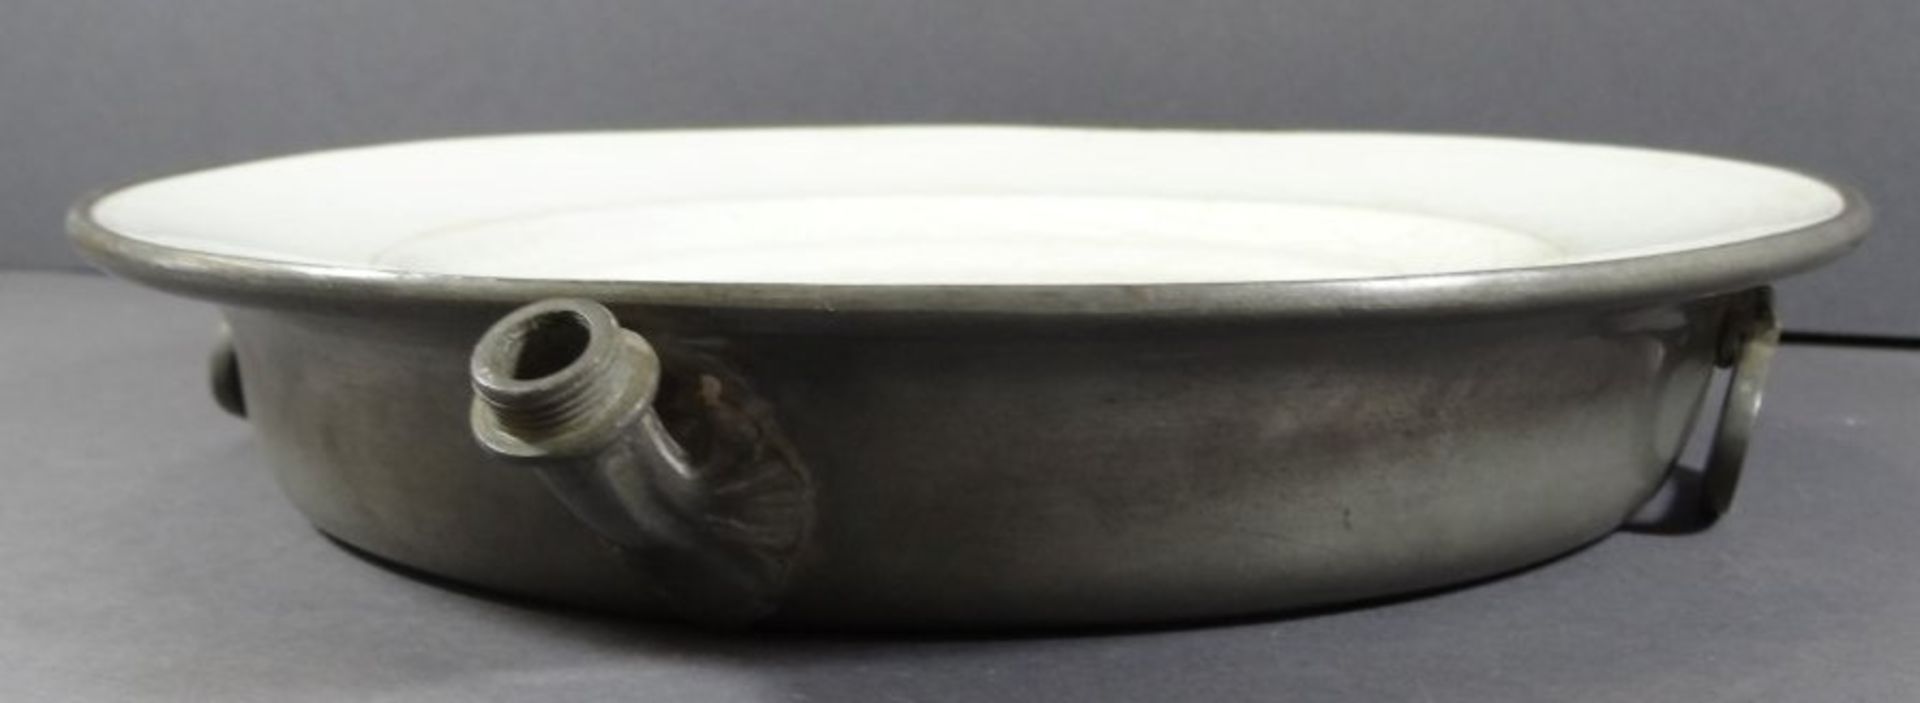 2x Warmhalteteller, Zinn-Unterbau, Keramik mit Altersspuren bzw. 1x mit Altriss, H-4,5 cm, D-27 cm